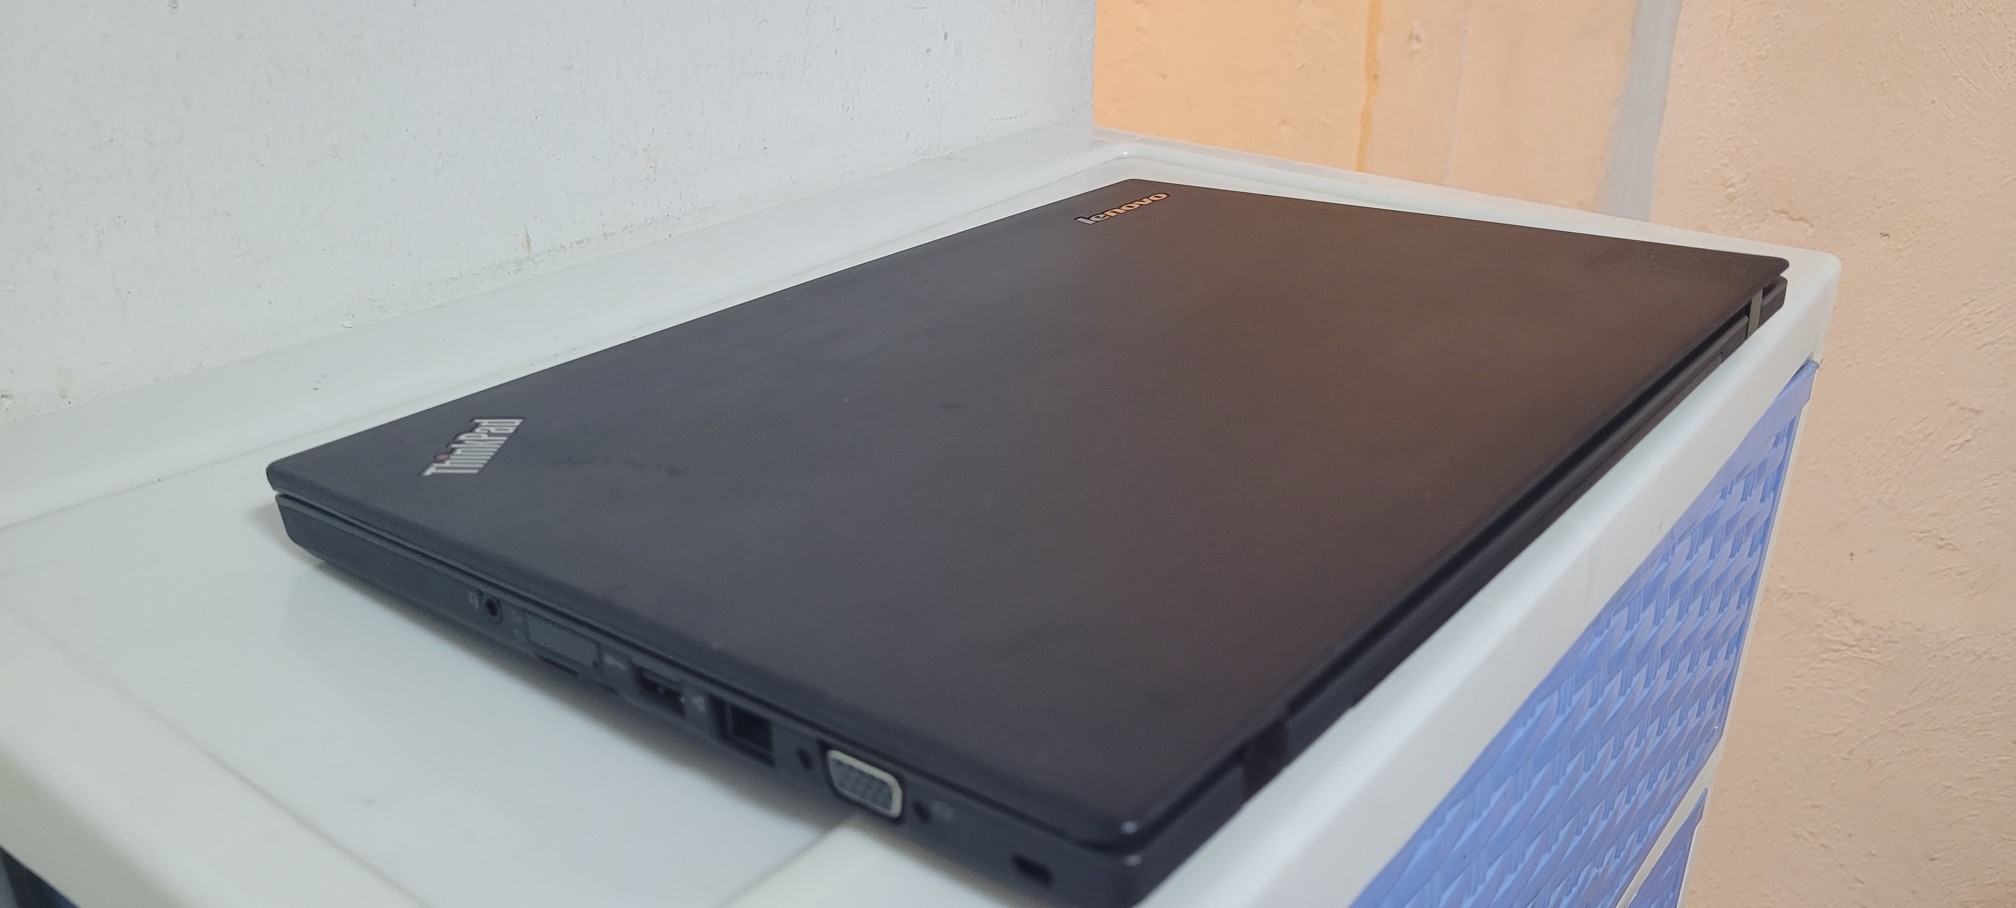 computadoras y laptops - Lenovo T450 14 Pulg Core i5 Ram 16gb Disco 128gb SSD Video 4gb 2